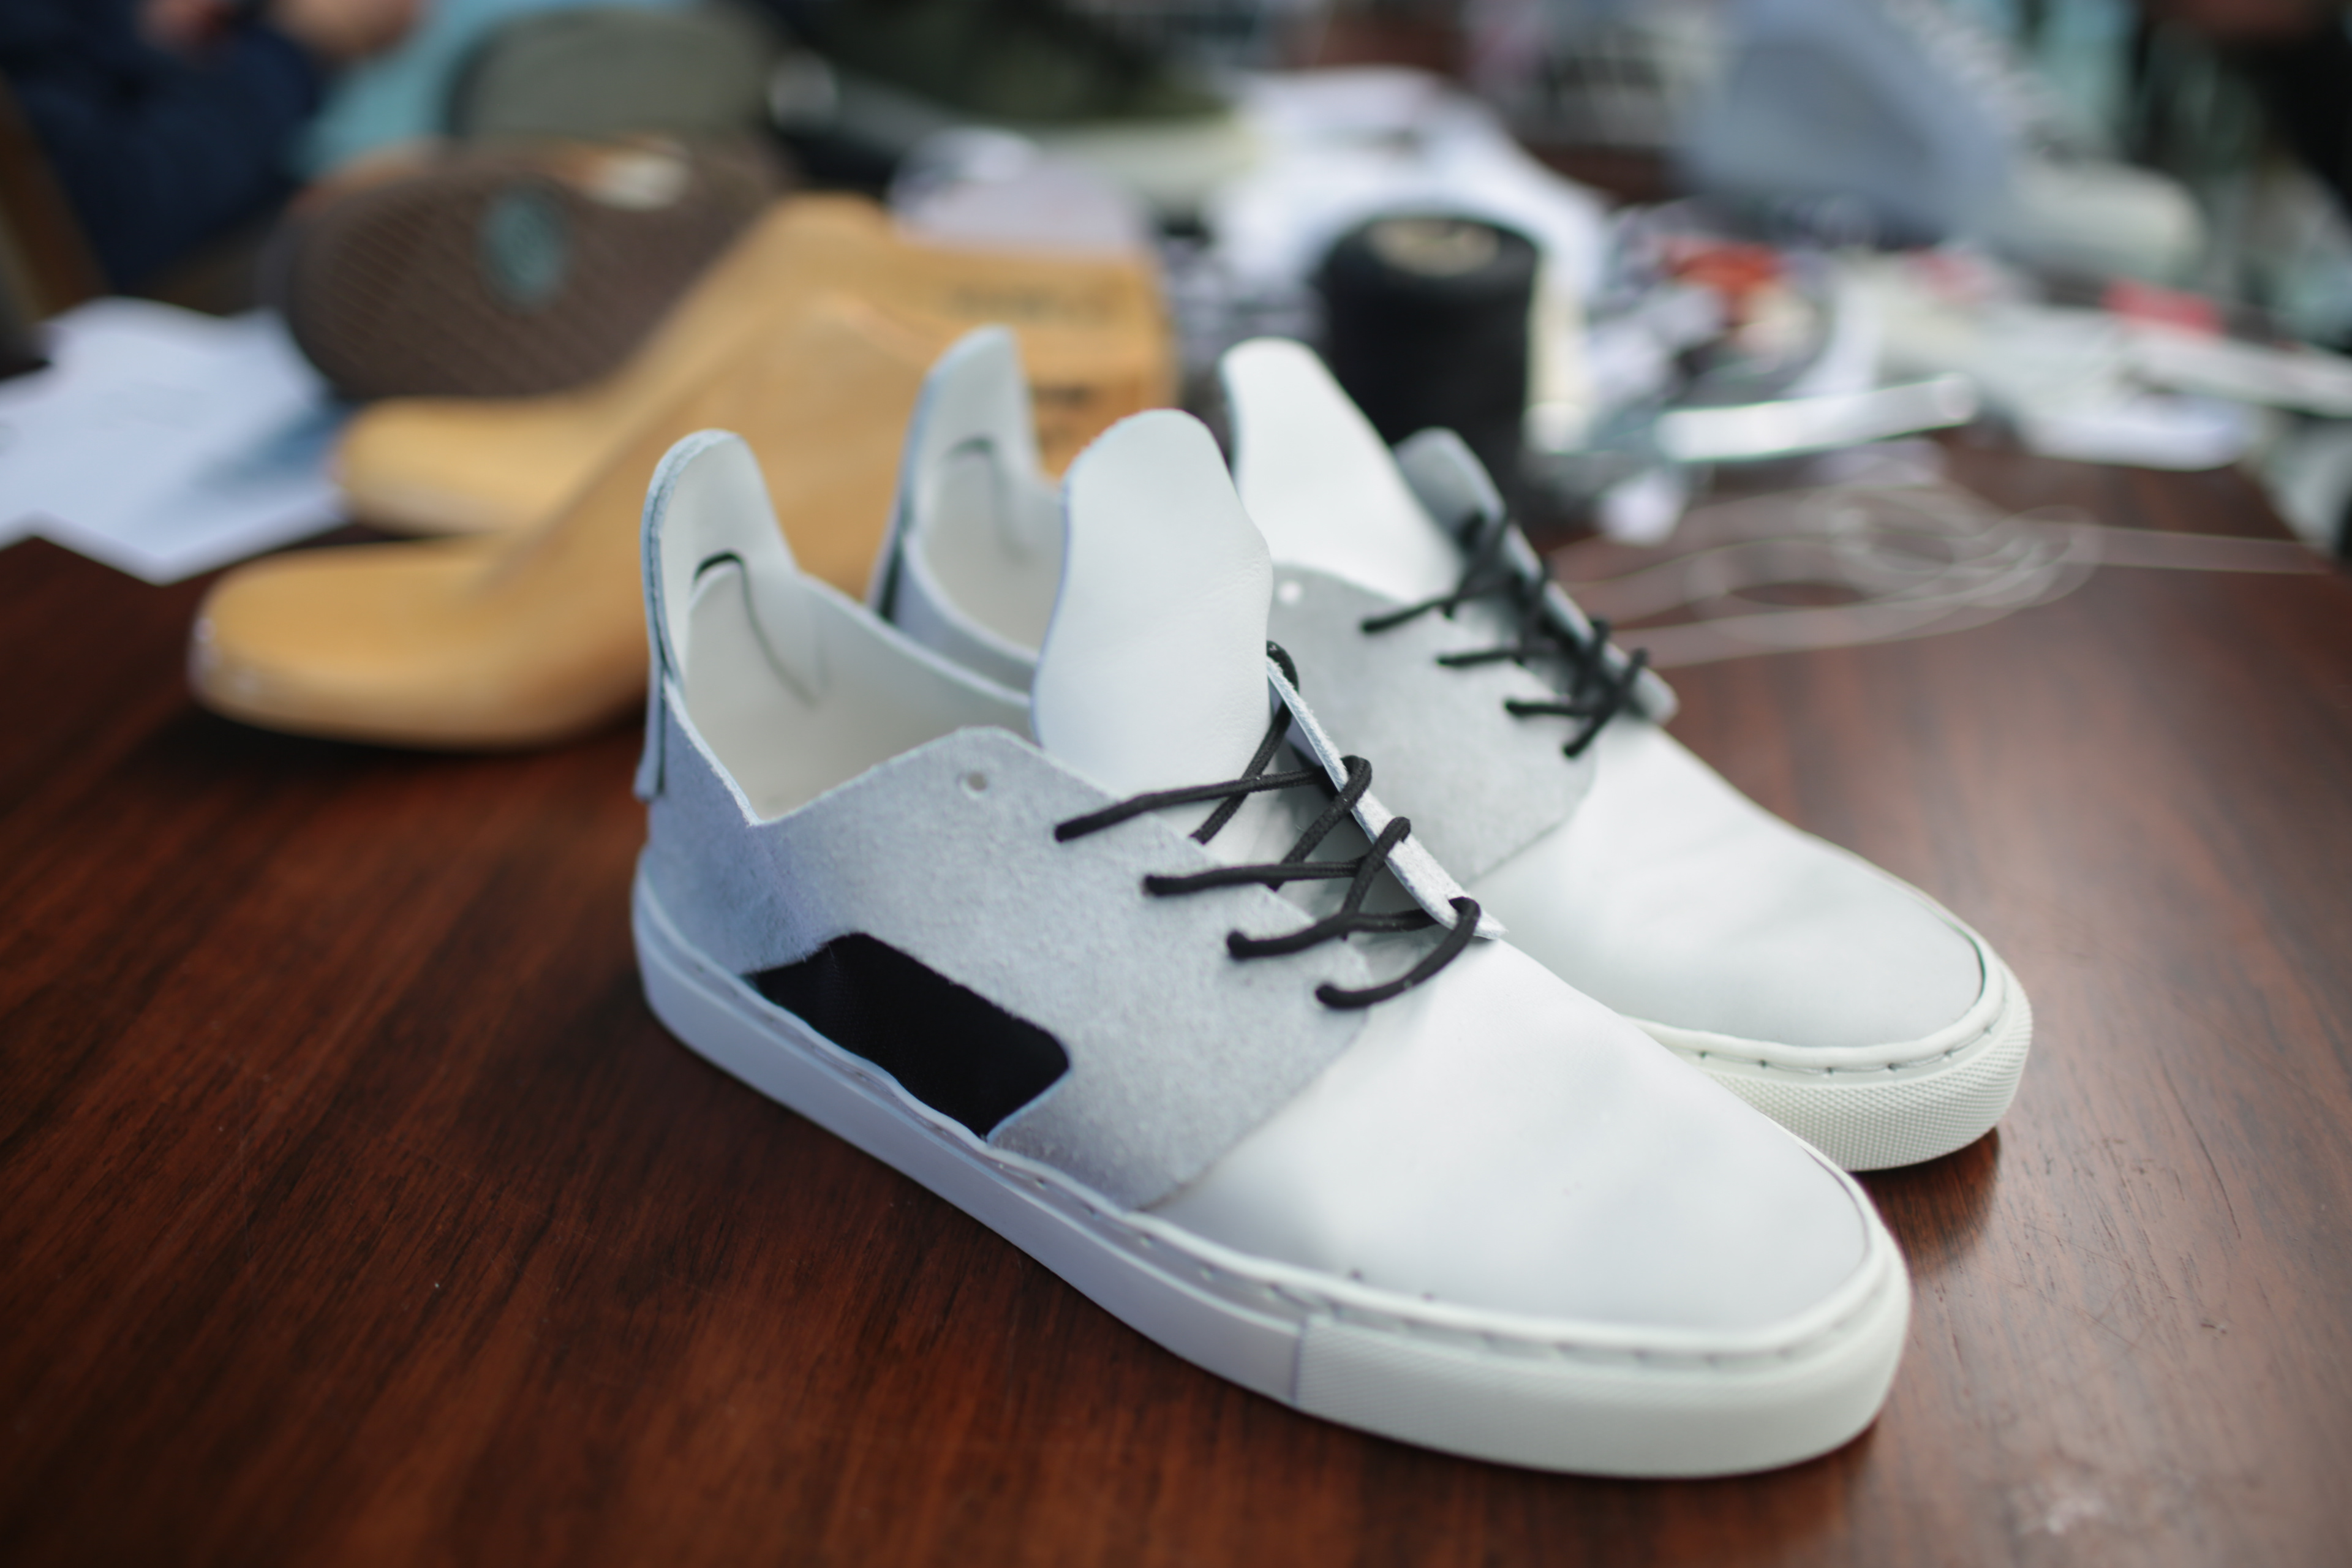 Daniel Woolhiser - Handmade Leather Sneakers